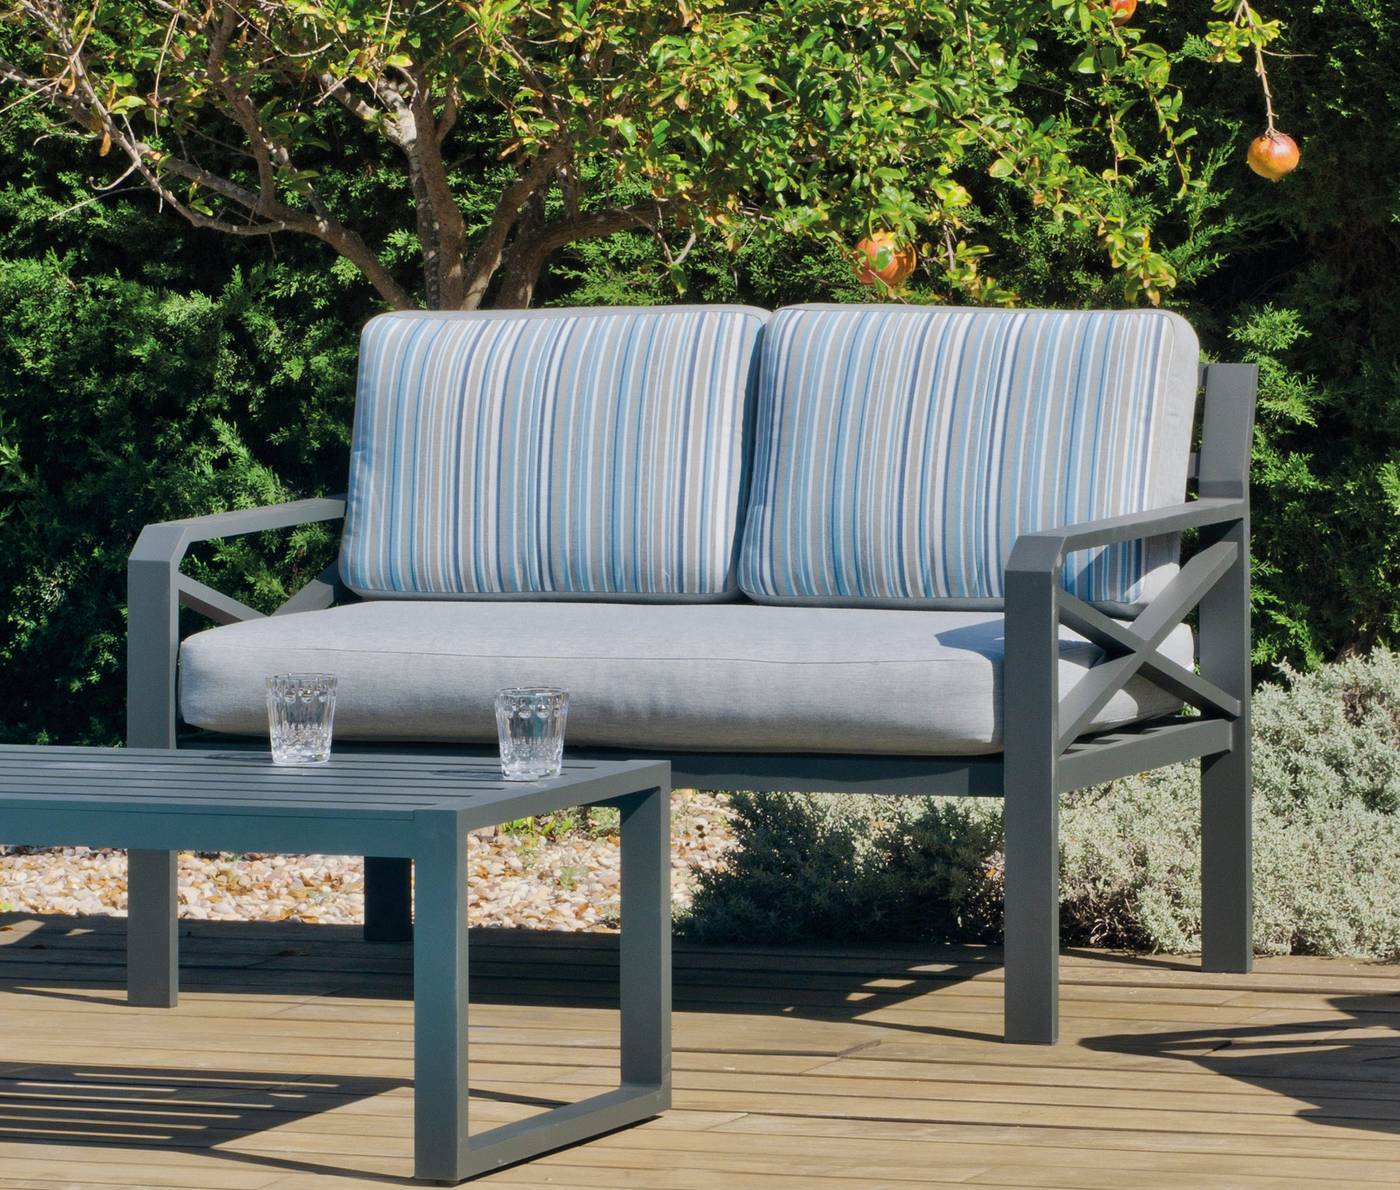 Conjunto Aluminio Luxe Lausana-7 - Conjunto de aluminio: 1 sofá de 2 plazas + 2 sillones + 1 mesa de centro + cojines. Disponible en color blanco y antracita.